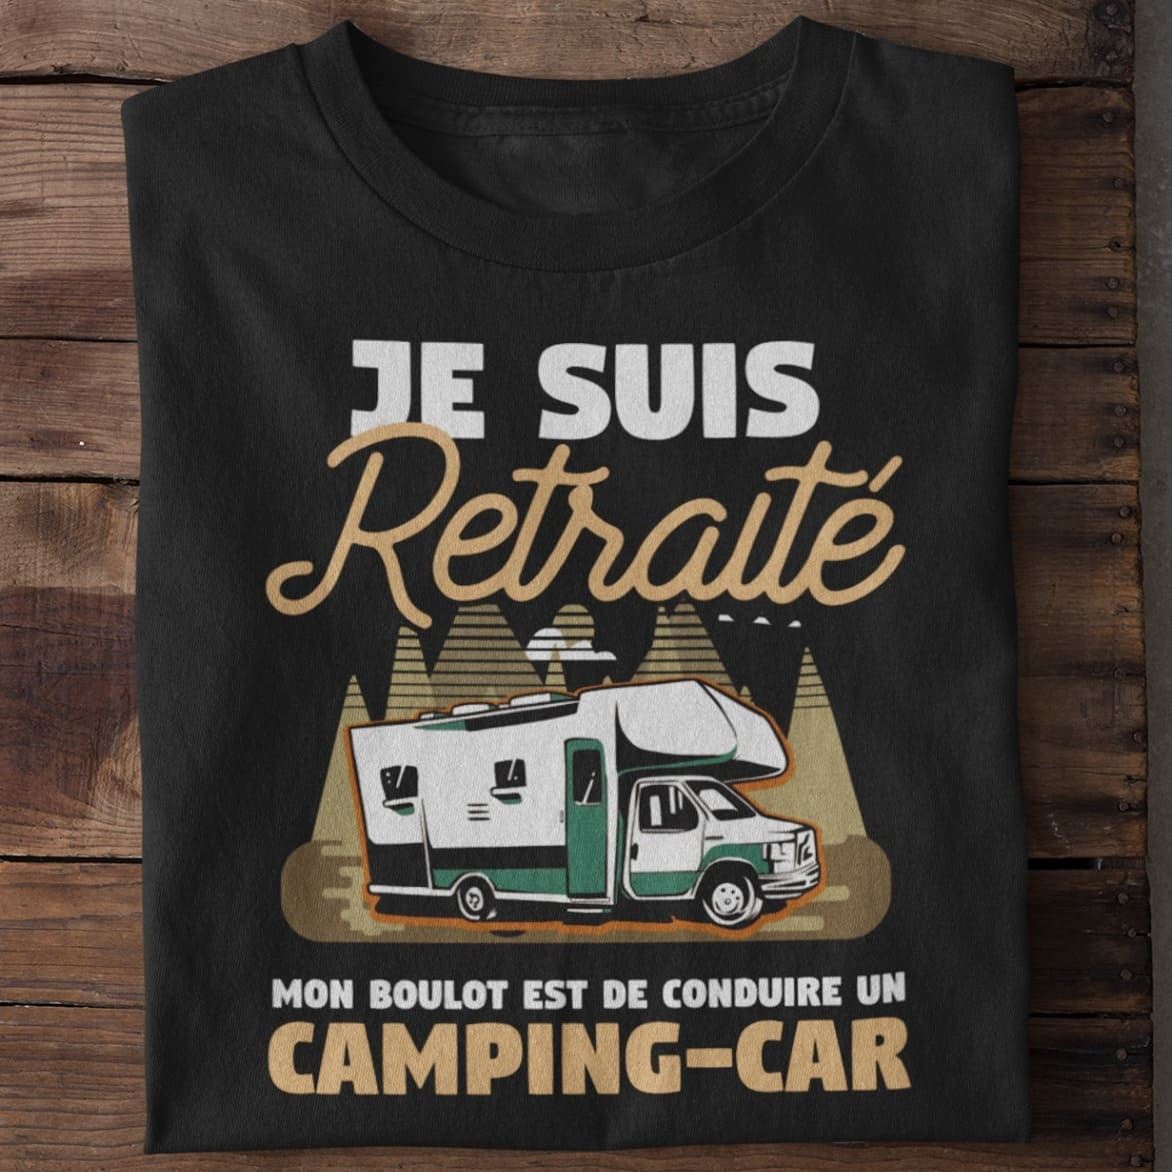 Camping Car - Je suis retraite mon boulot est de conduire un camping car